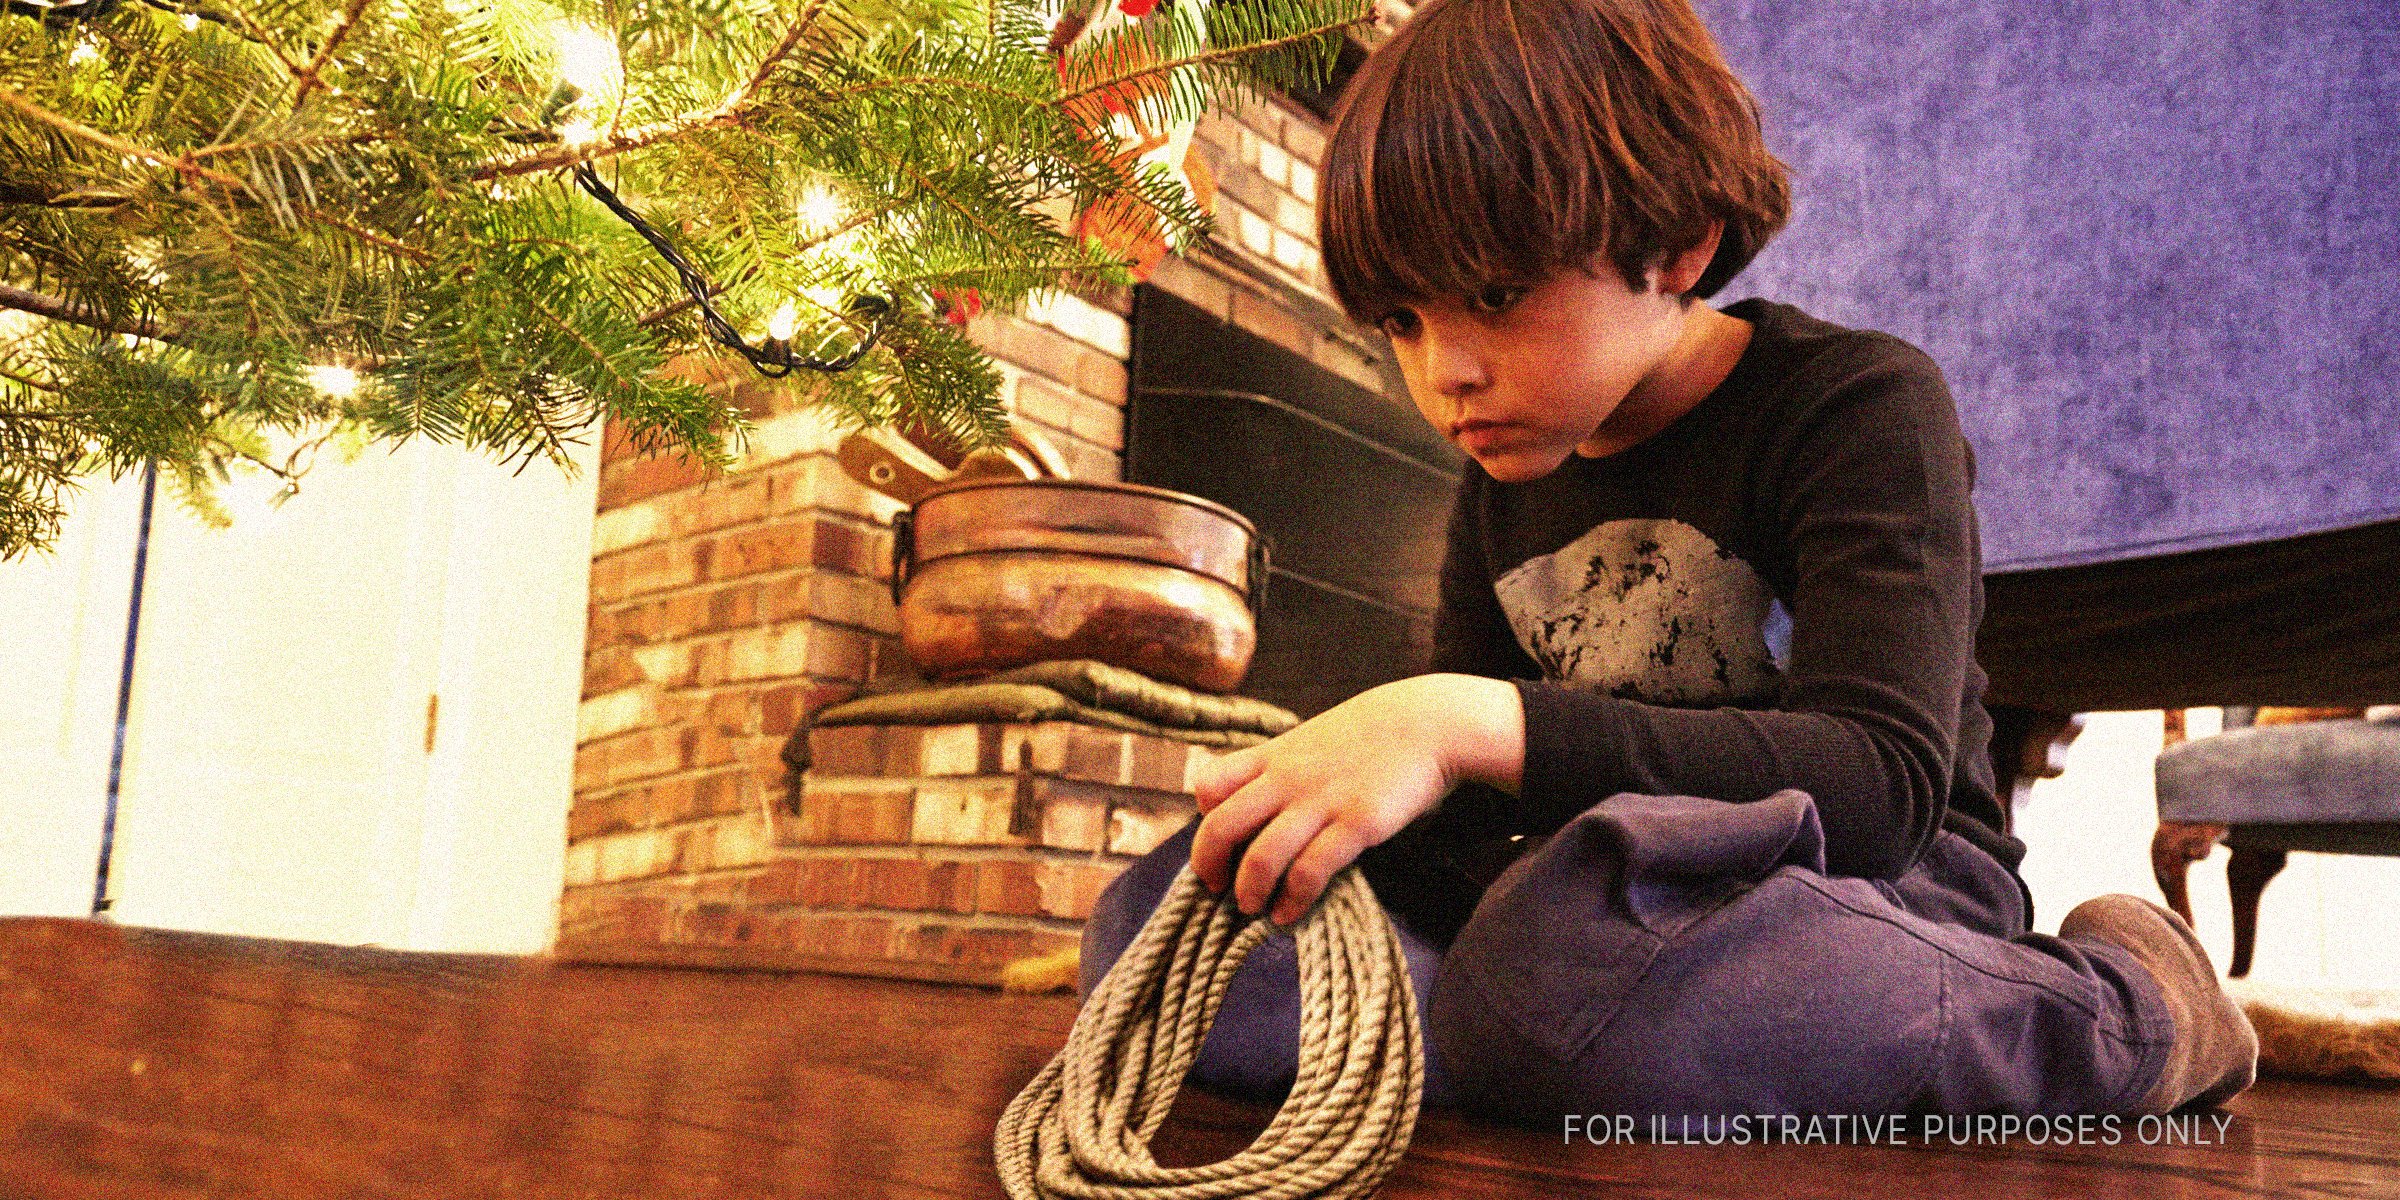 Junge mit einem Seil unter einem Weihnachtsbaum | Quelle: Getty Images